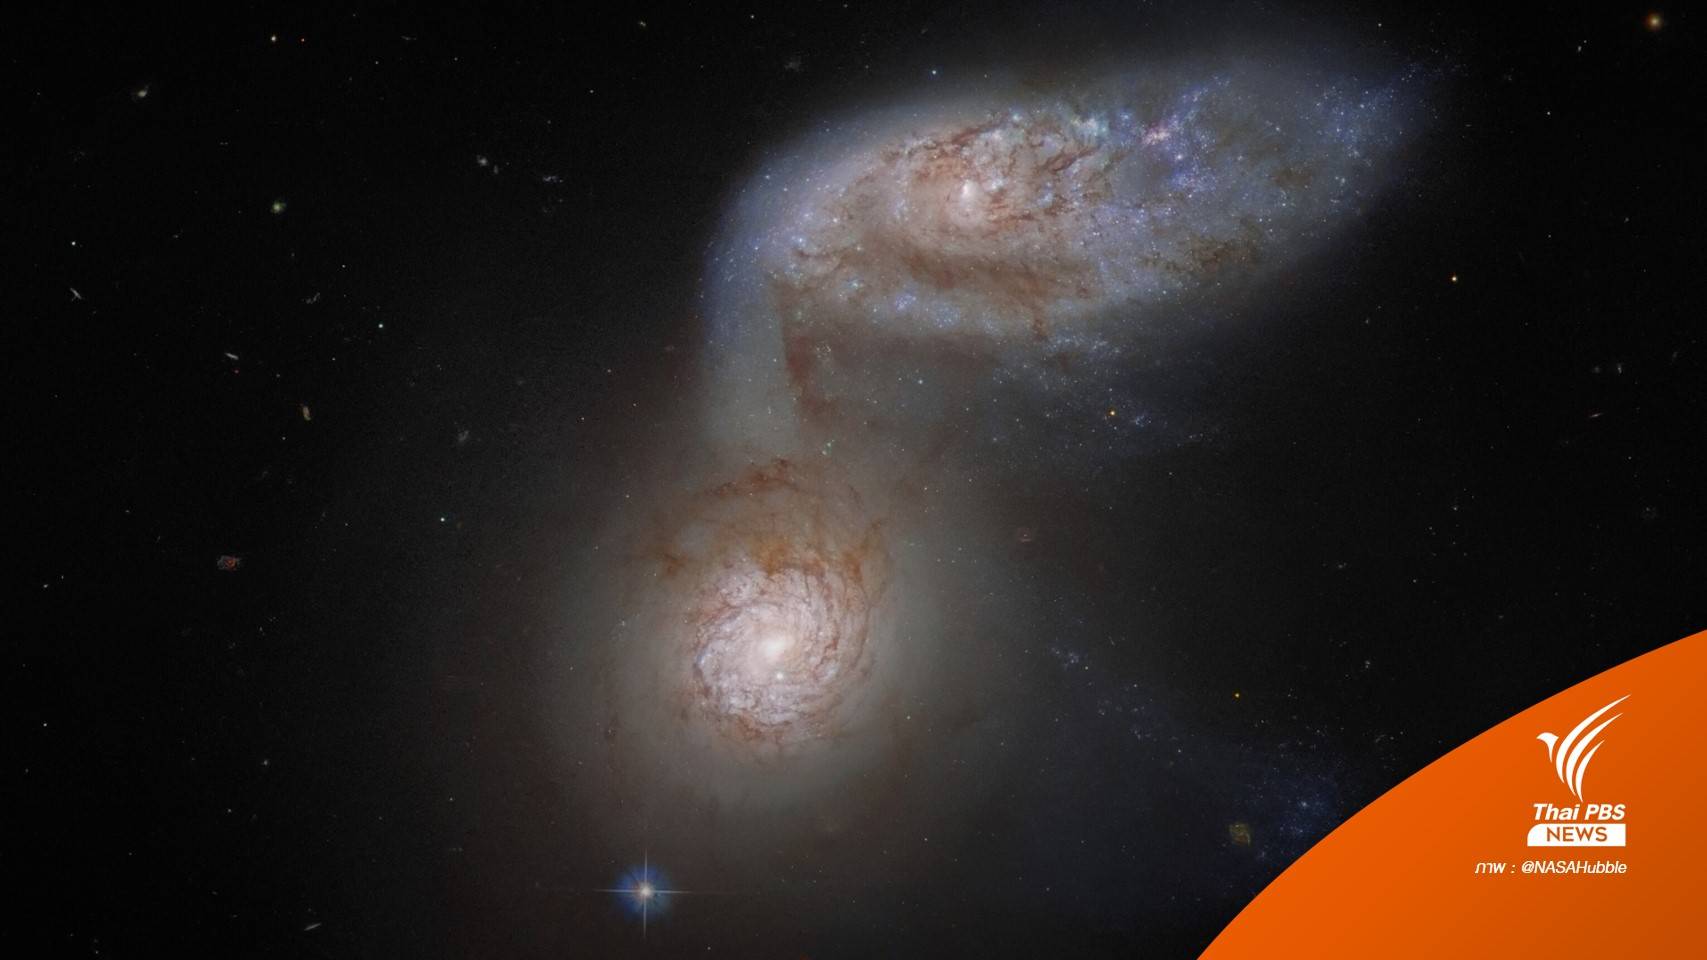 กล้องโทรทรรศน์อวกาศฮับเบิลเปิดภาพ "สองกาแล็กซี" ที่กำลังชนกัน